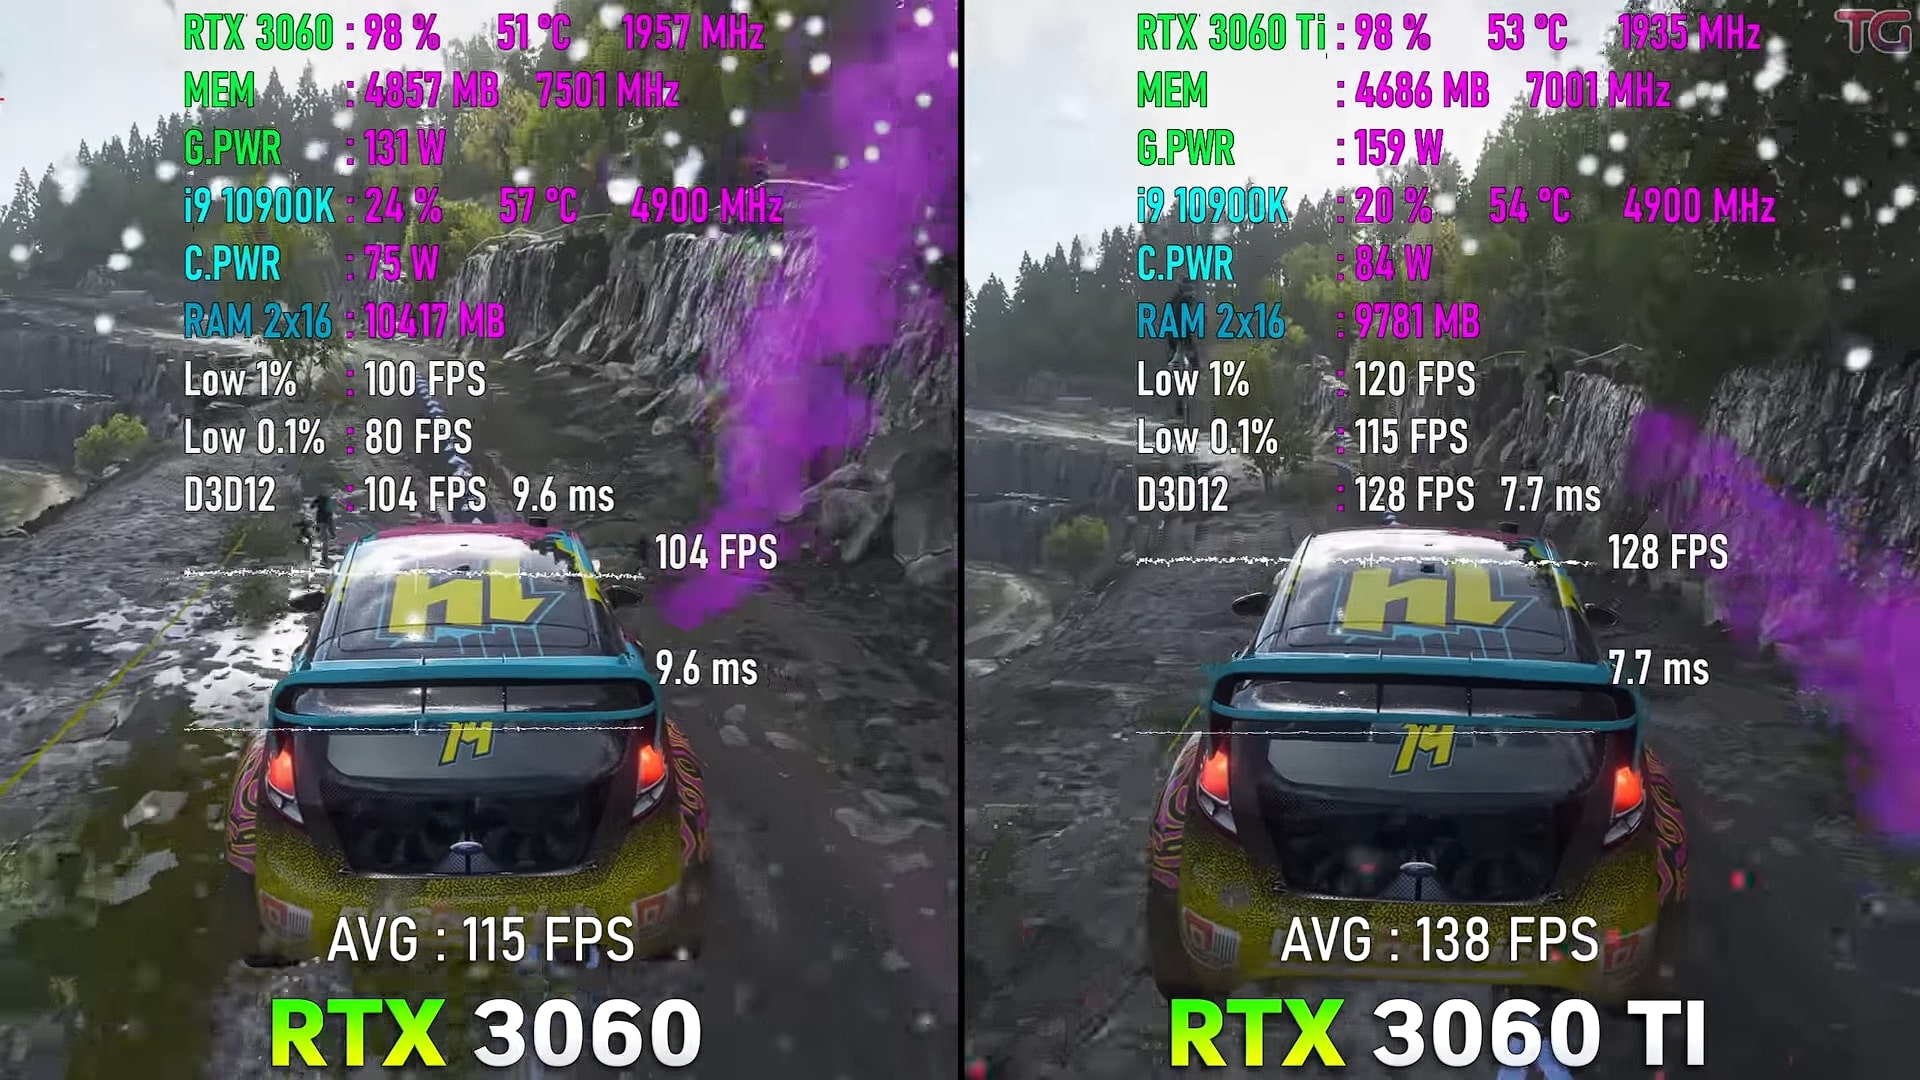 RTX 3060 Vs. RTX 3060 Ti comparision on Forza Horizon 4